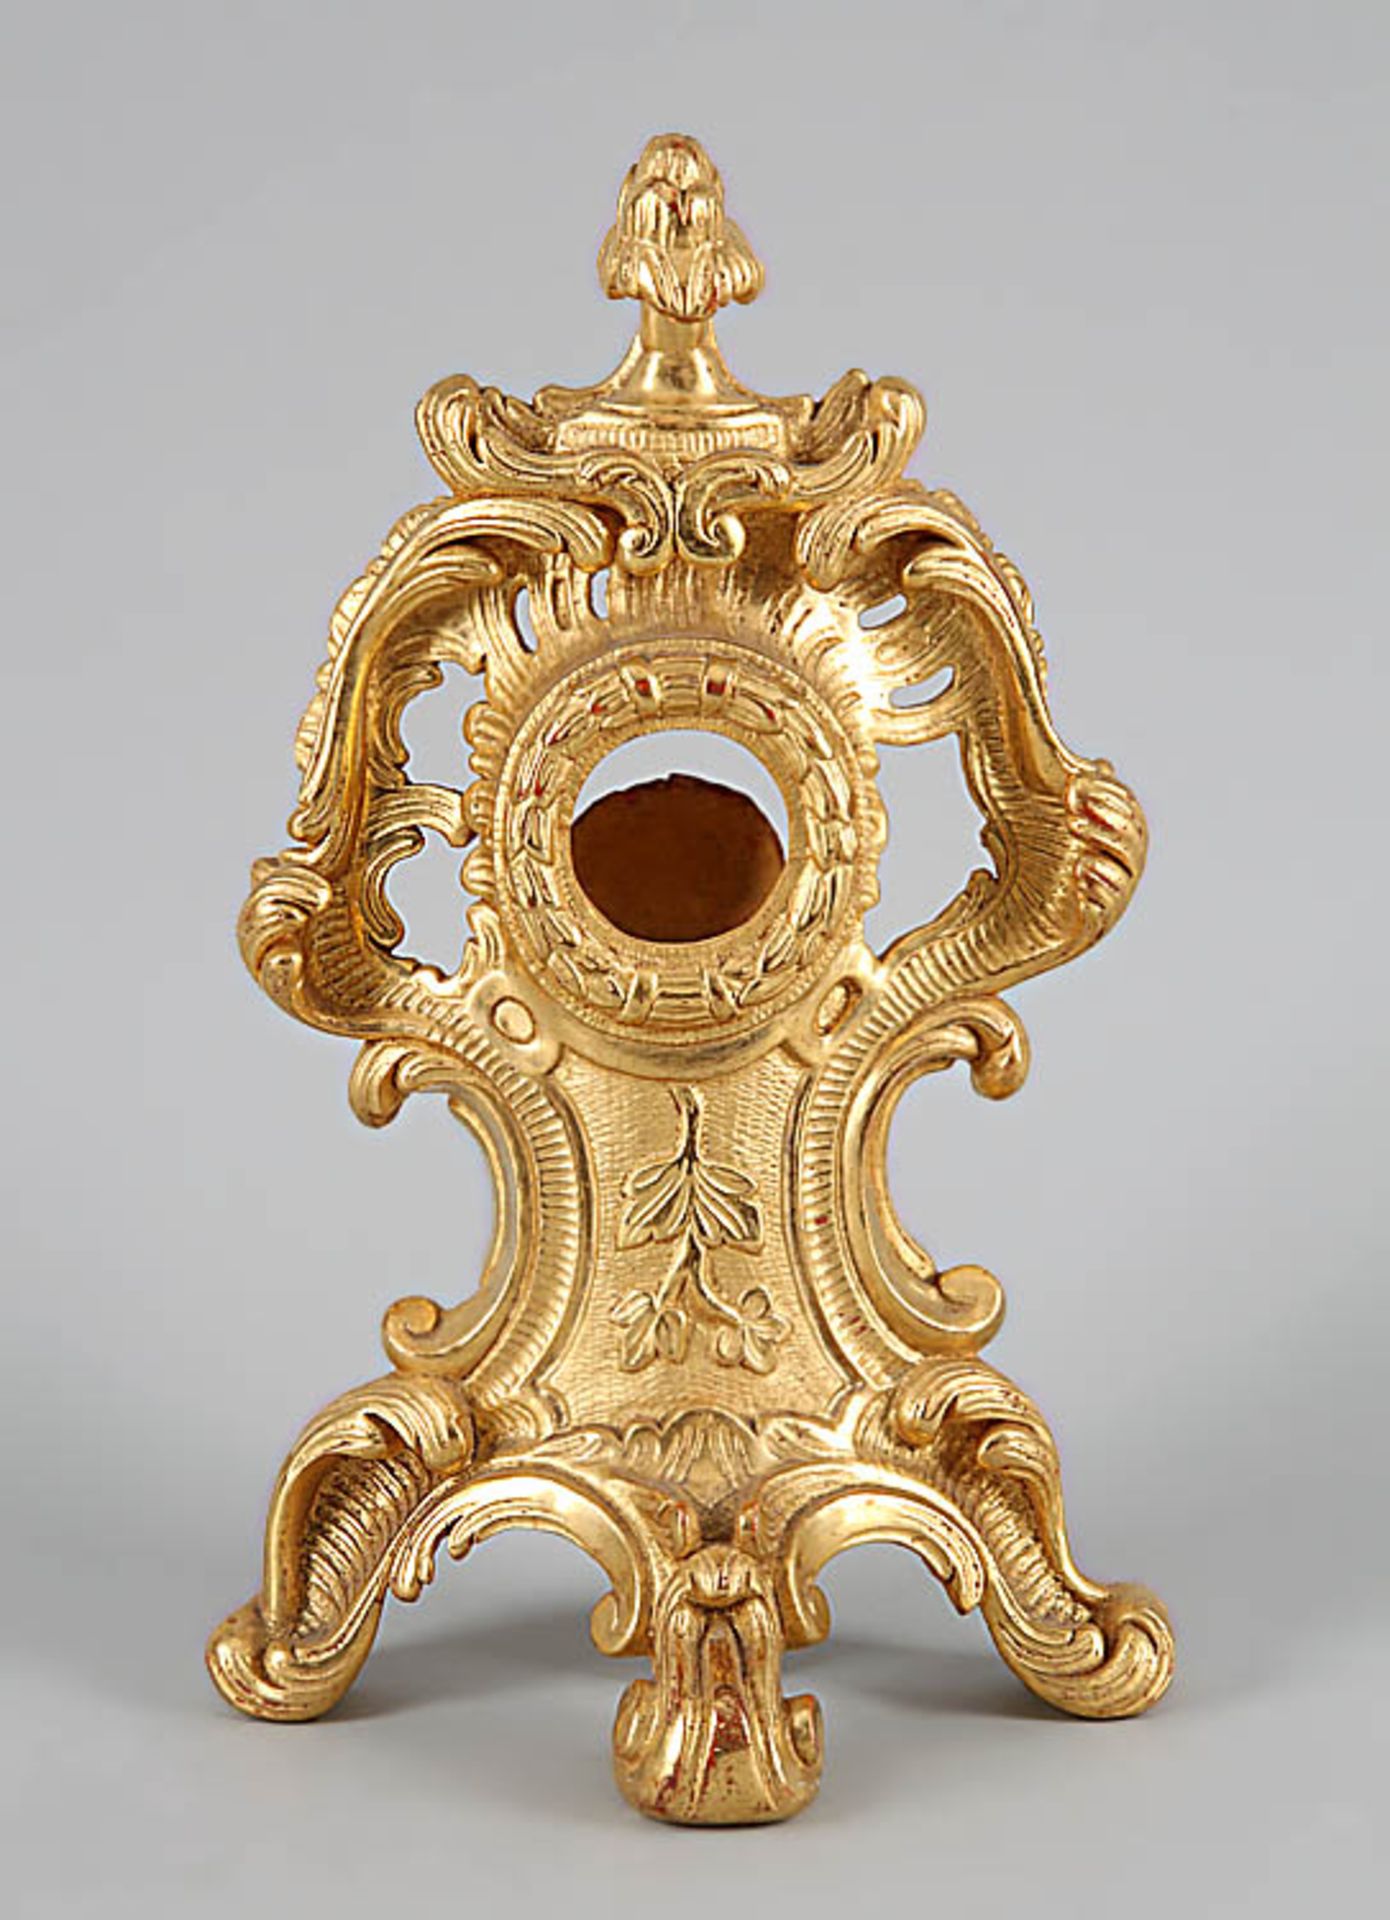 TaschenuhrständerFeine barocke Holzschnitzerei, vergoldet. H 29,5 cm.€ 50